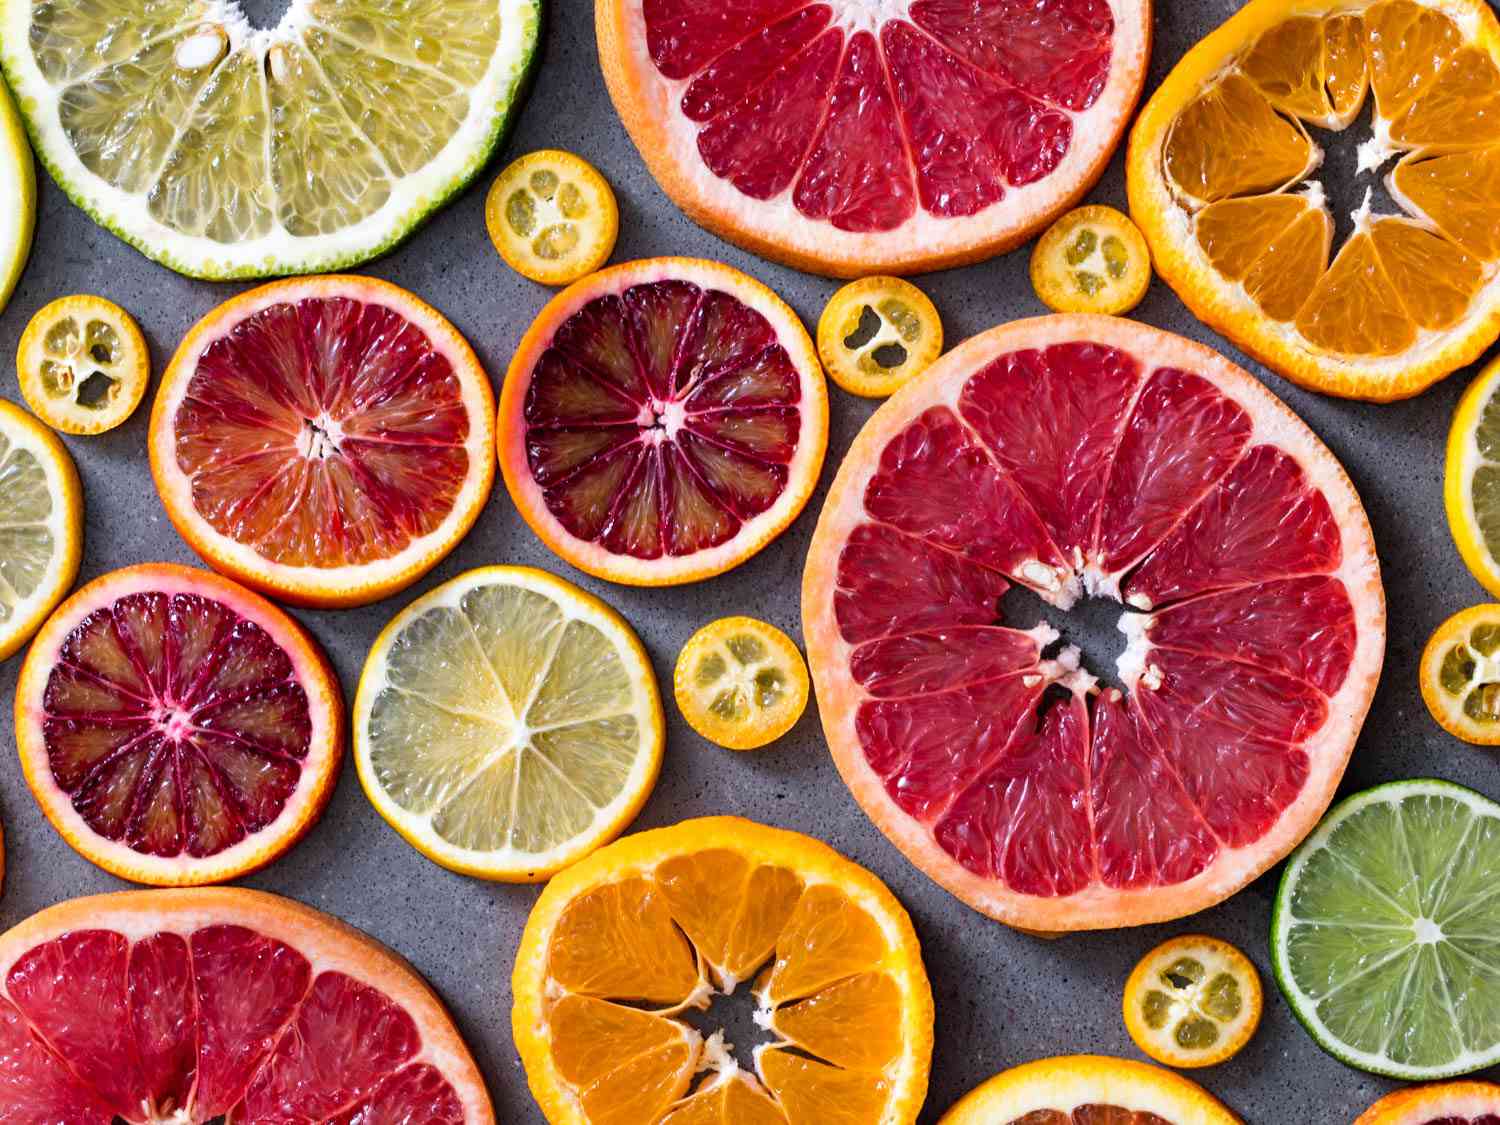 Citrus Fruits (Oranges, Grapefruits, Lemons, Limes)